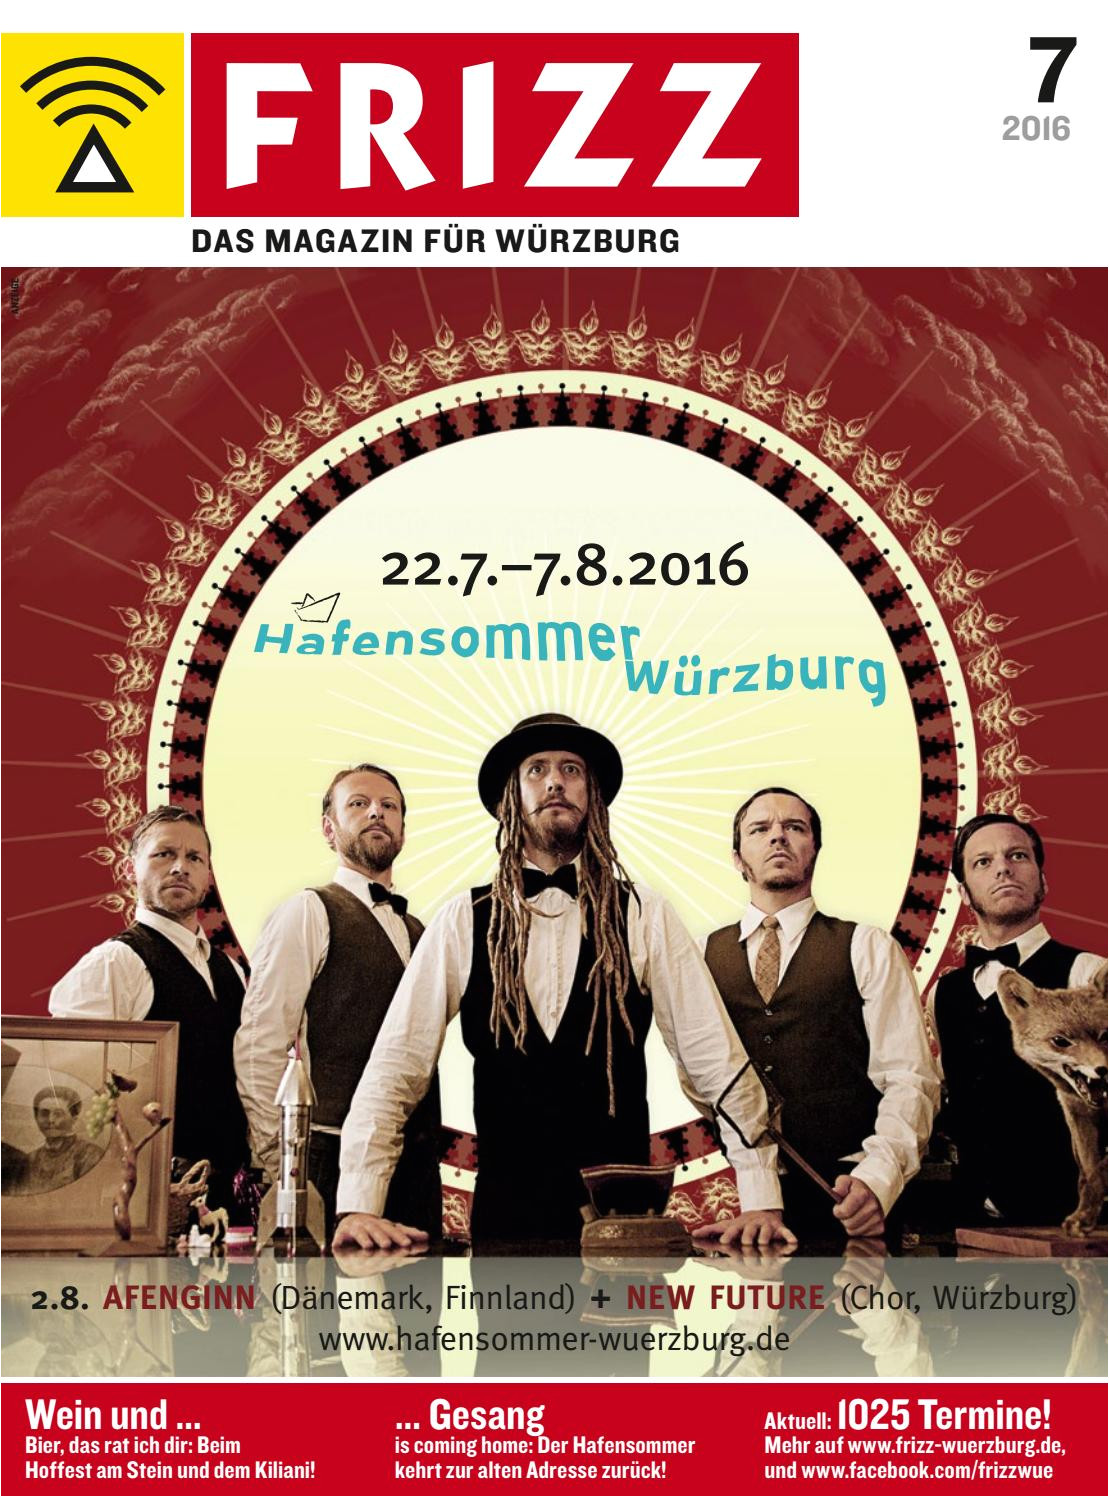 Alexandria Bay Ny Upcoming events Frizz Das Magazin Fur Wurzburg Juli 2016 by Frizz Das Magazin